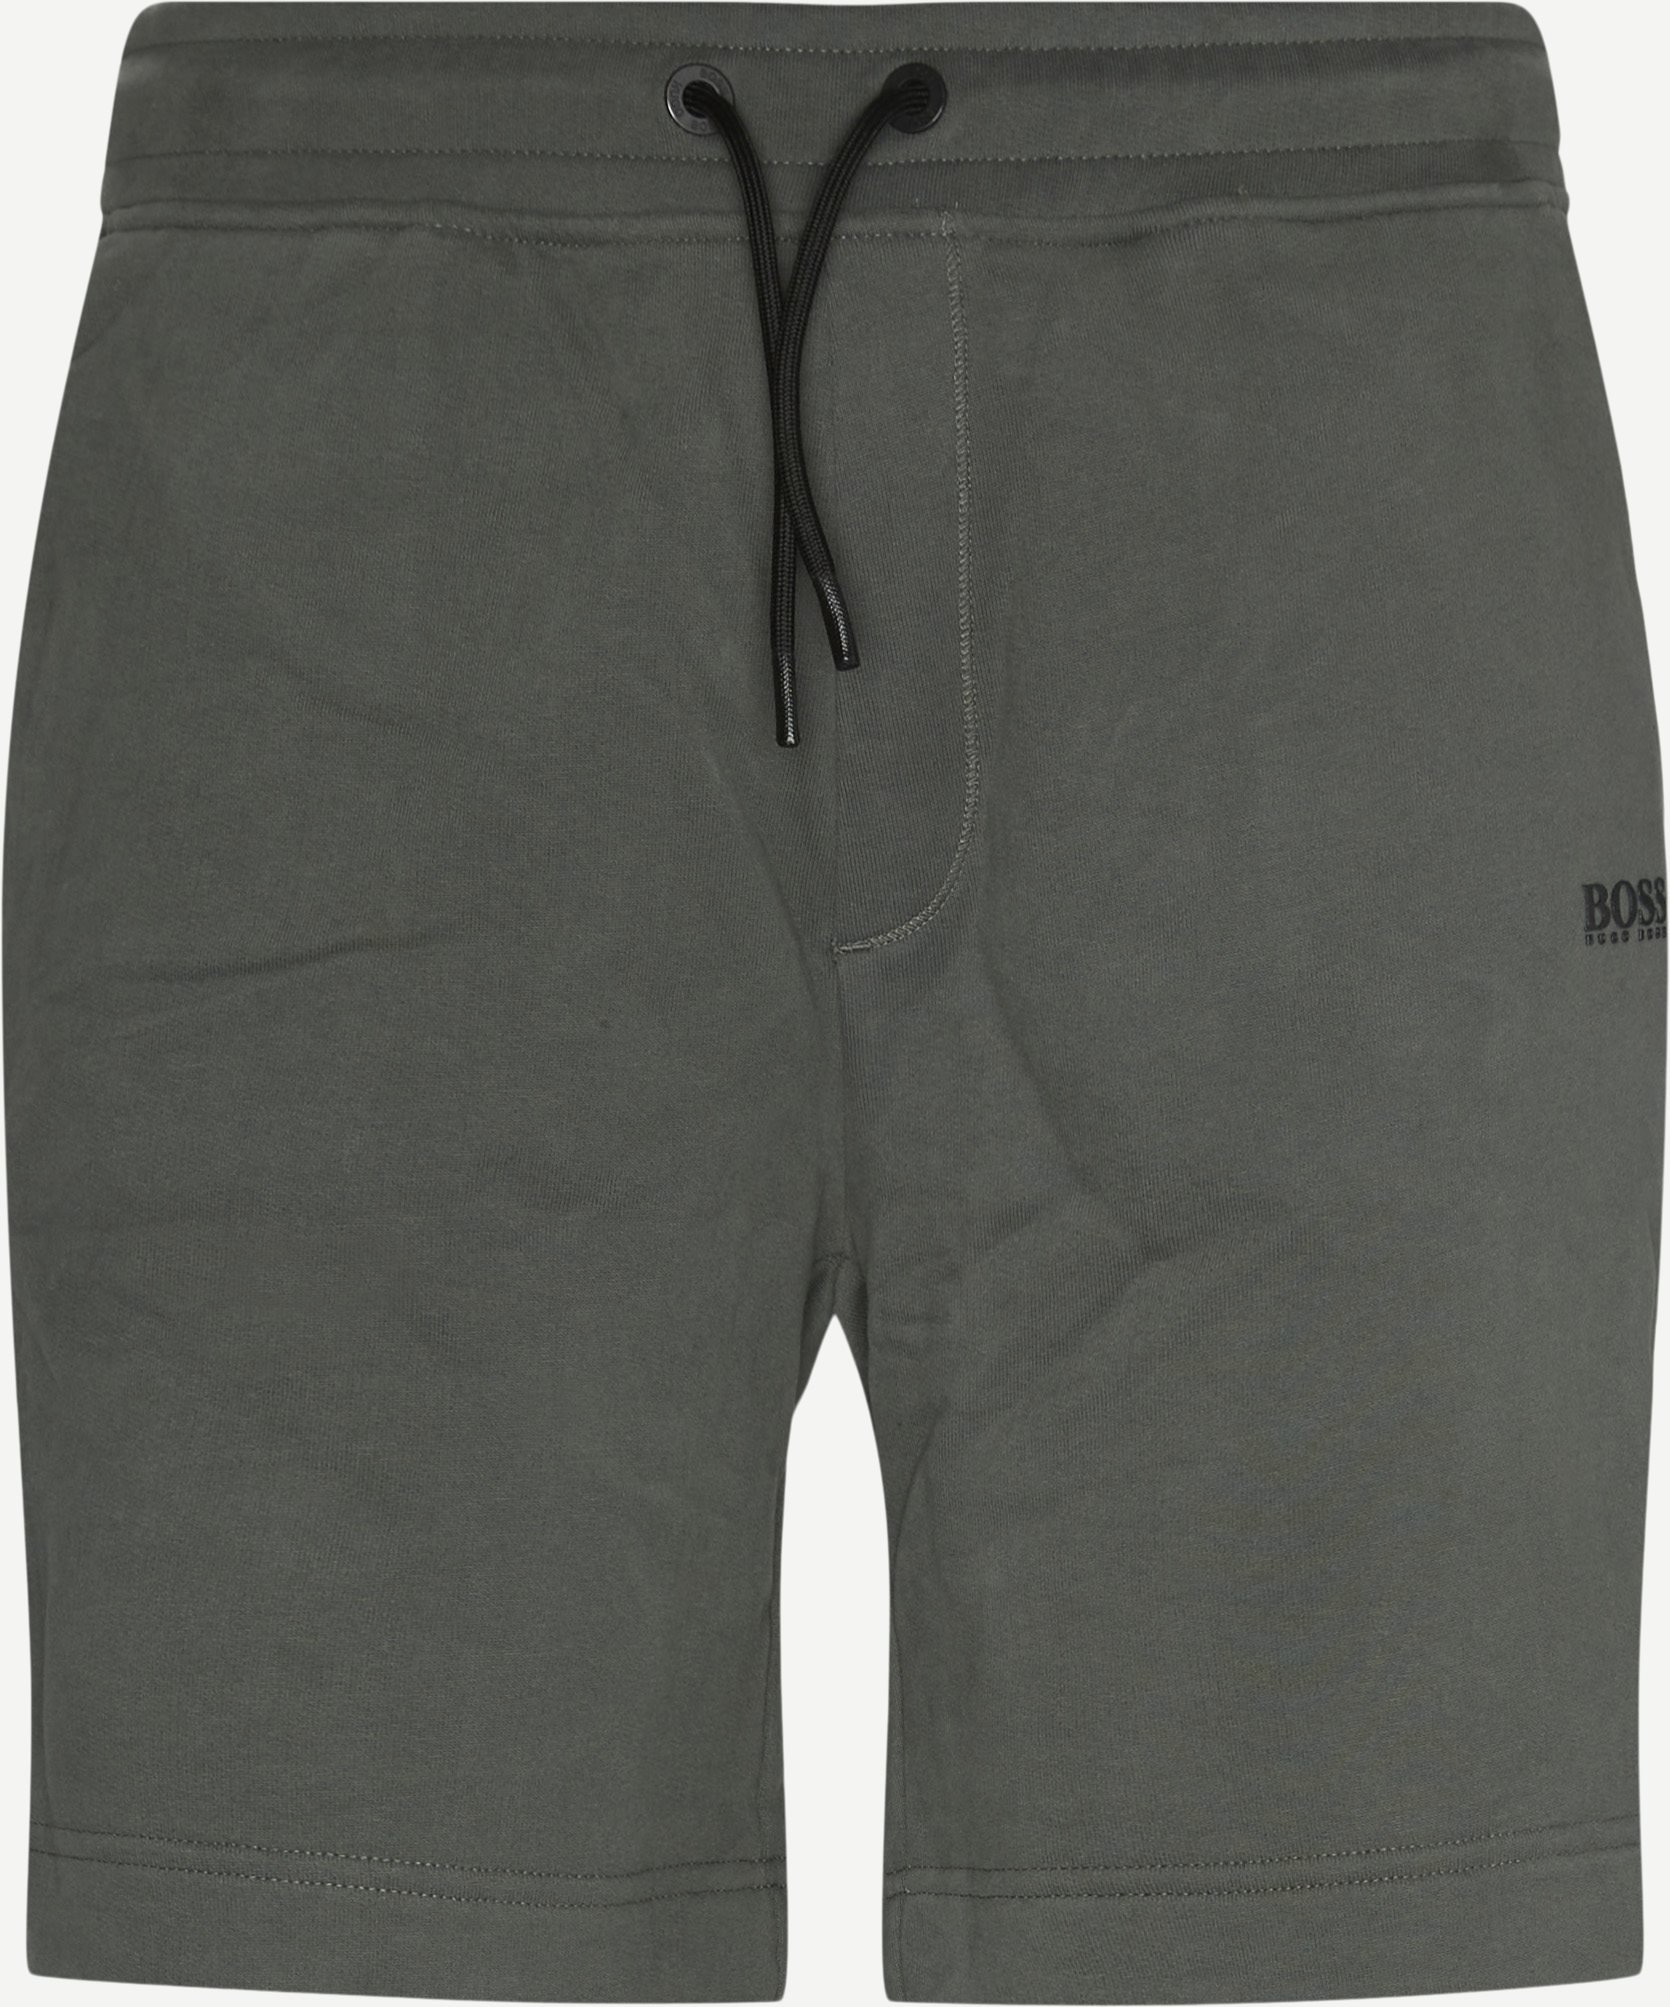 Skeevito Sweatshorts - Shorts - Regular fit - Oliv